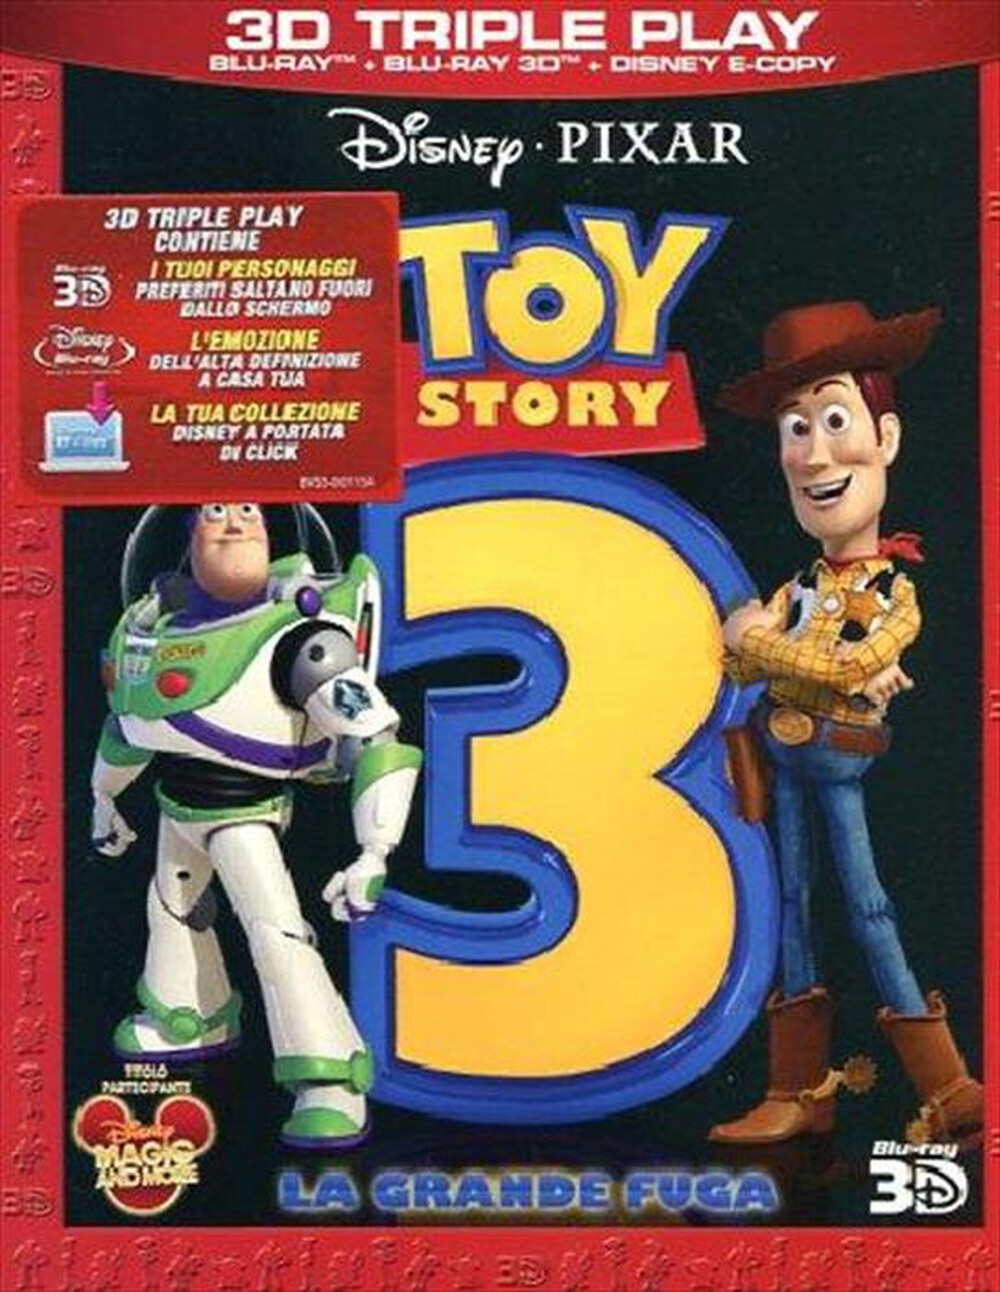 "WALT DISNEY - Toy Story 3 - La Grande Fuga (3D) (Blu-Ray+Blu-R"